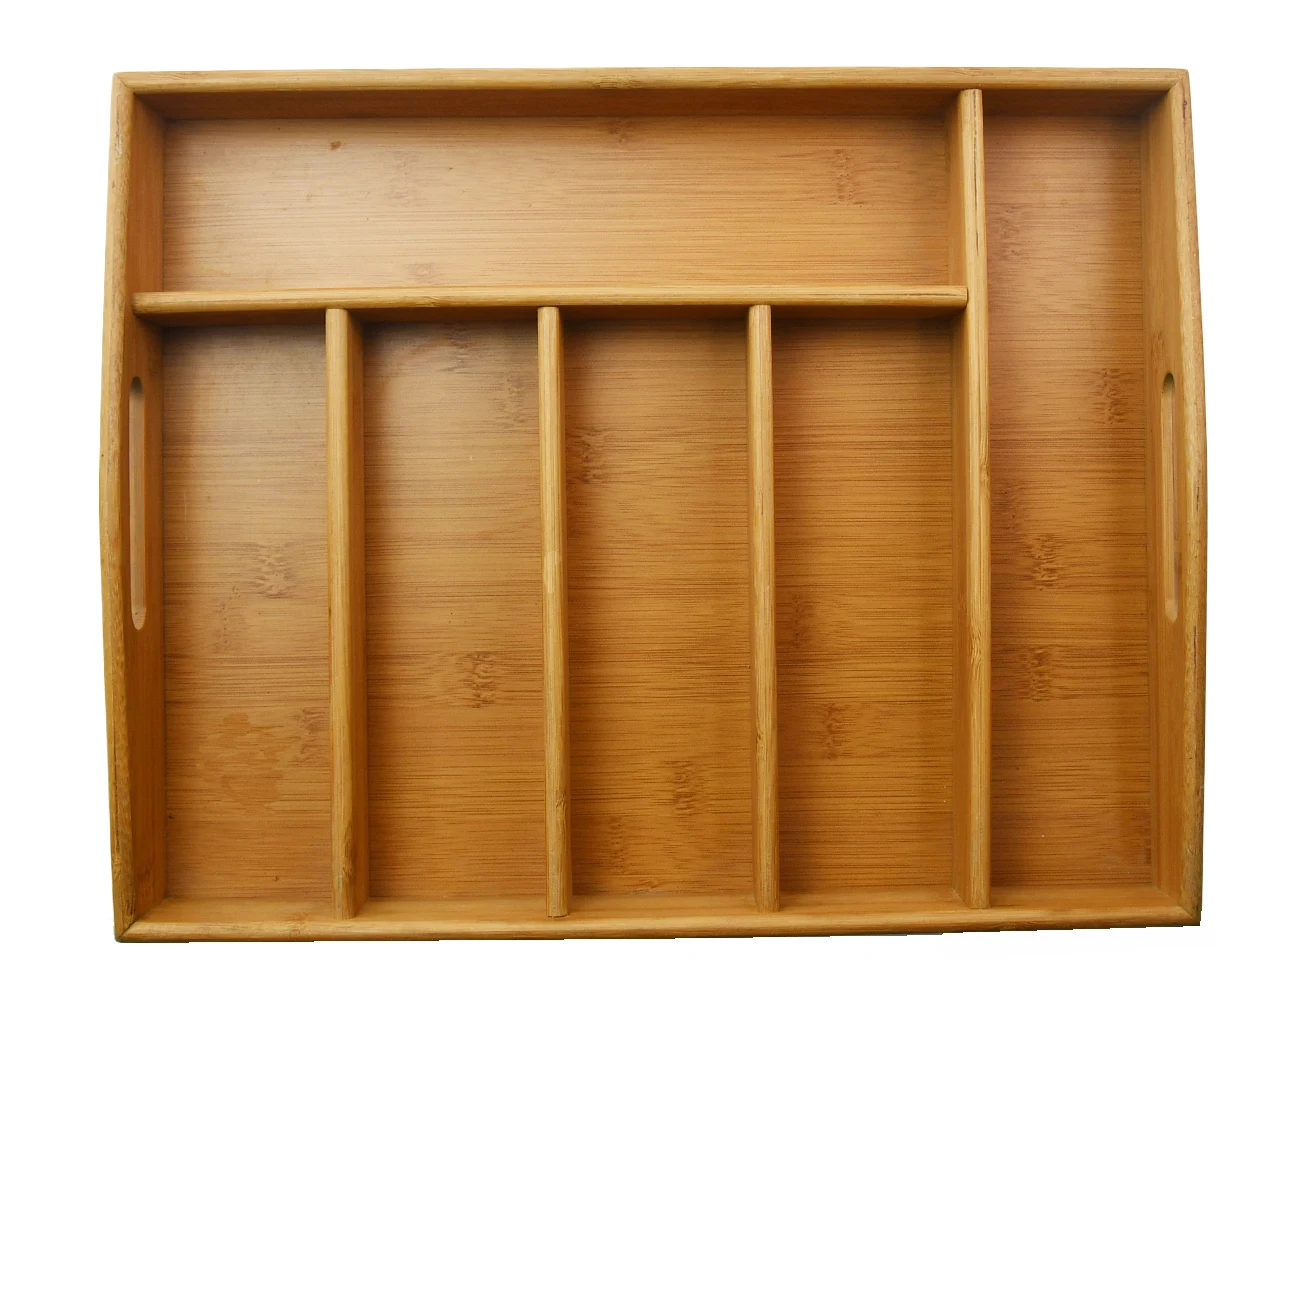 Factory Bamboo Storage Wood  Utensils Drawer Kitchen Accessories Organizer Silverware Holder with Handles